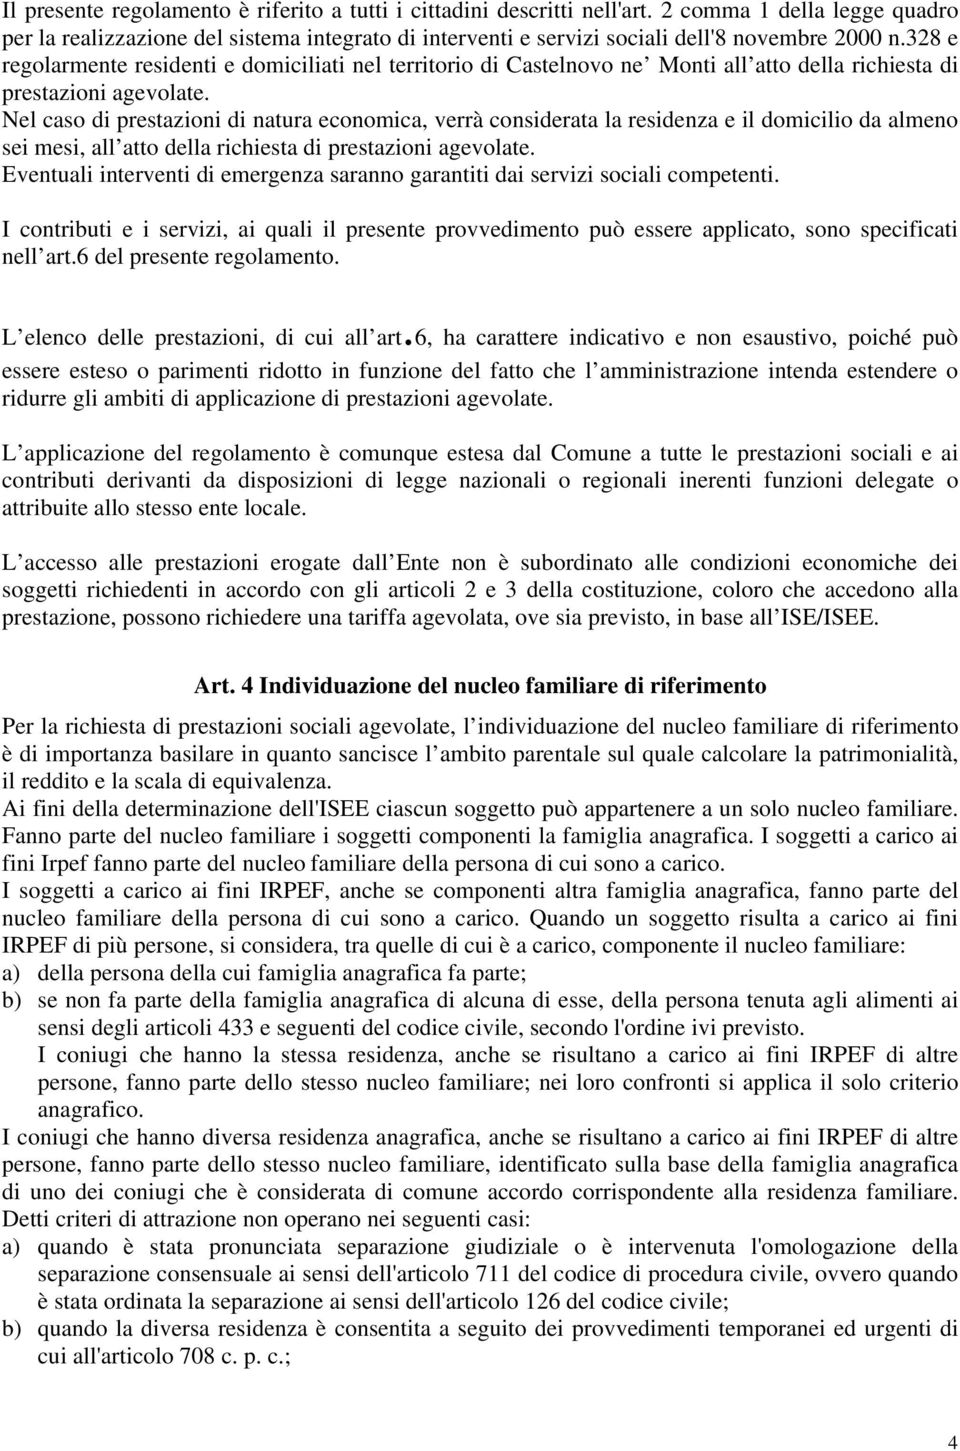 328 e regolarmente residenti e domiciliati nel territorio di Castelnovo ne Monti all atto della richiesta di prestazioni agevolate.